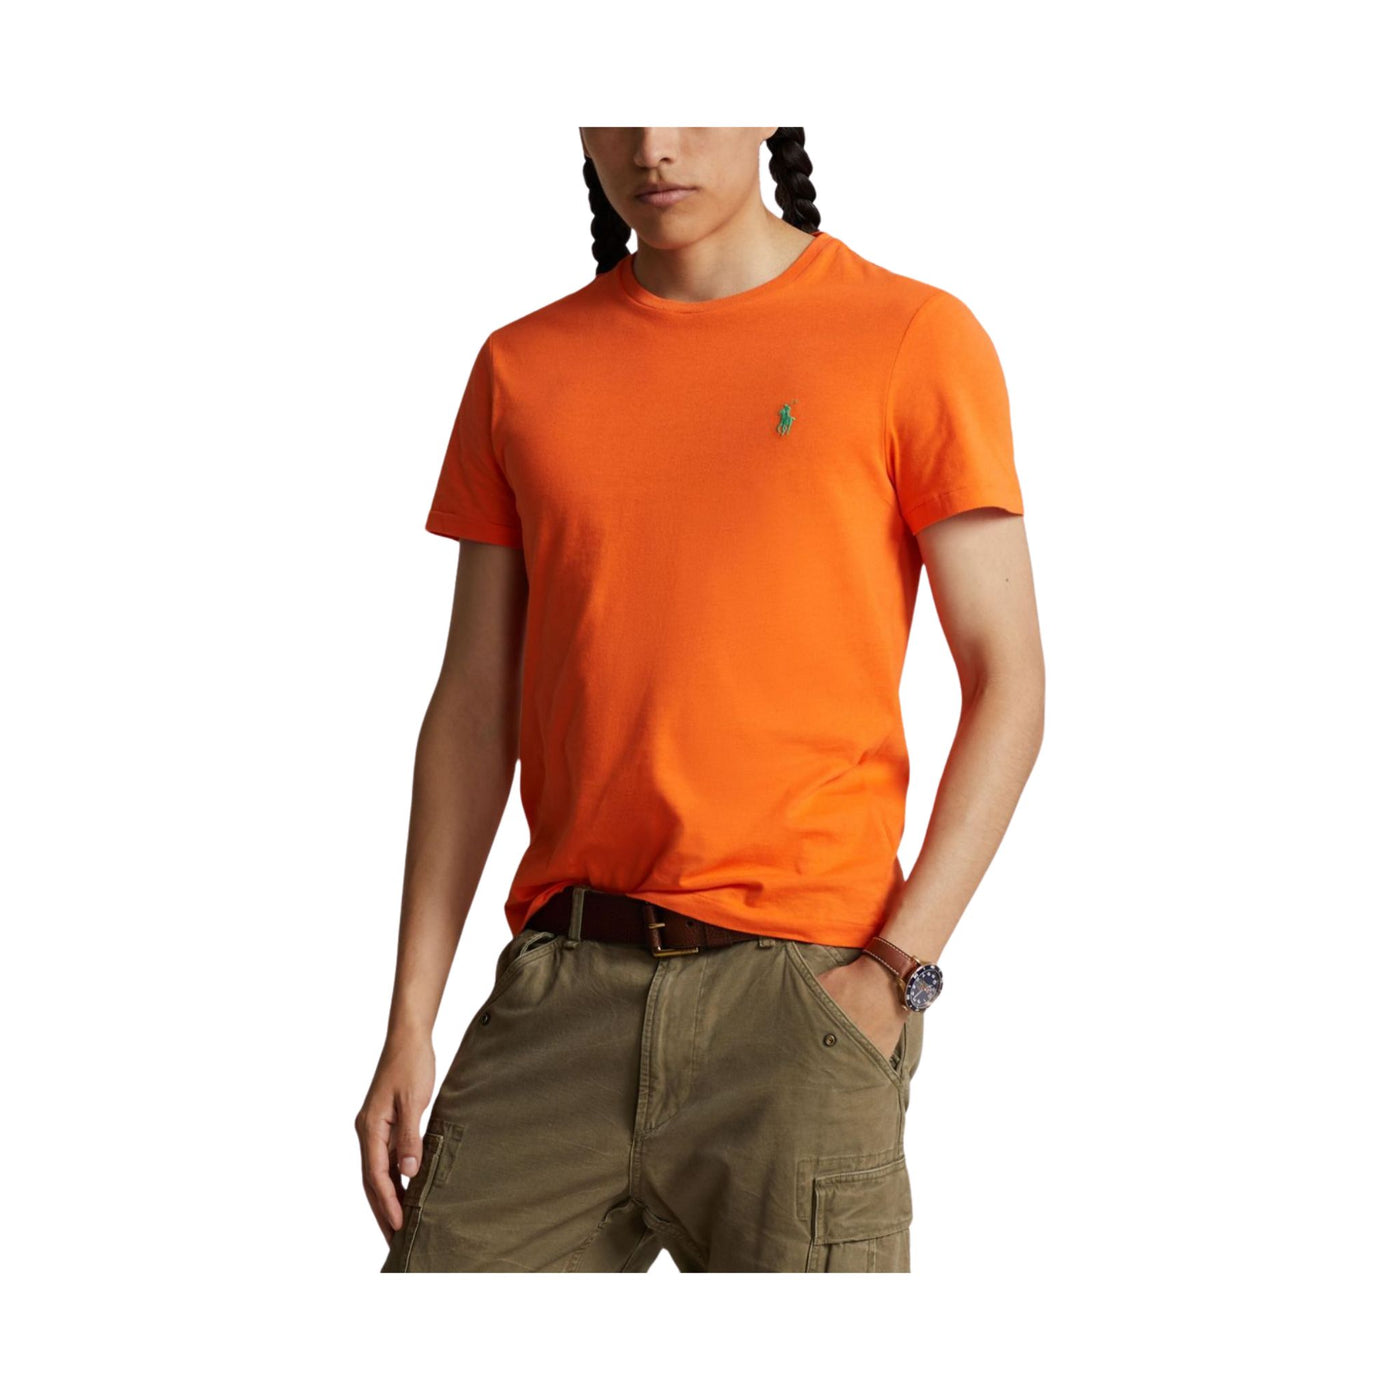 Modello con T-shirt in tinta unita arancione con cavallino sul petto in contrasto